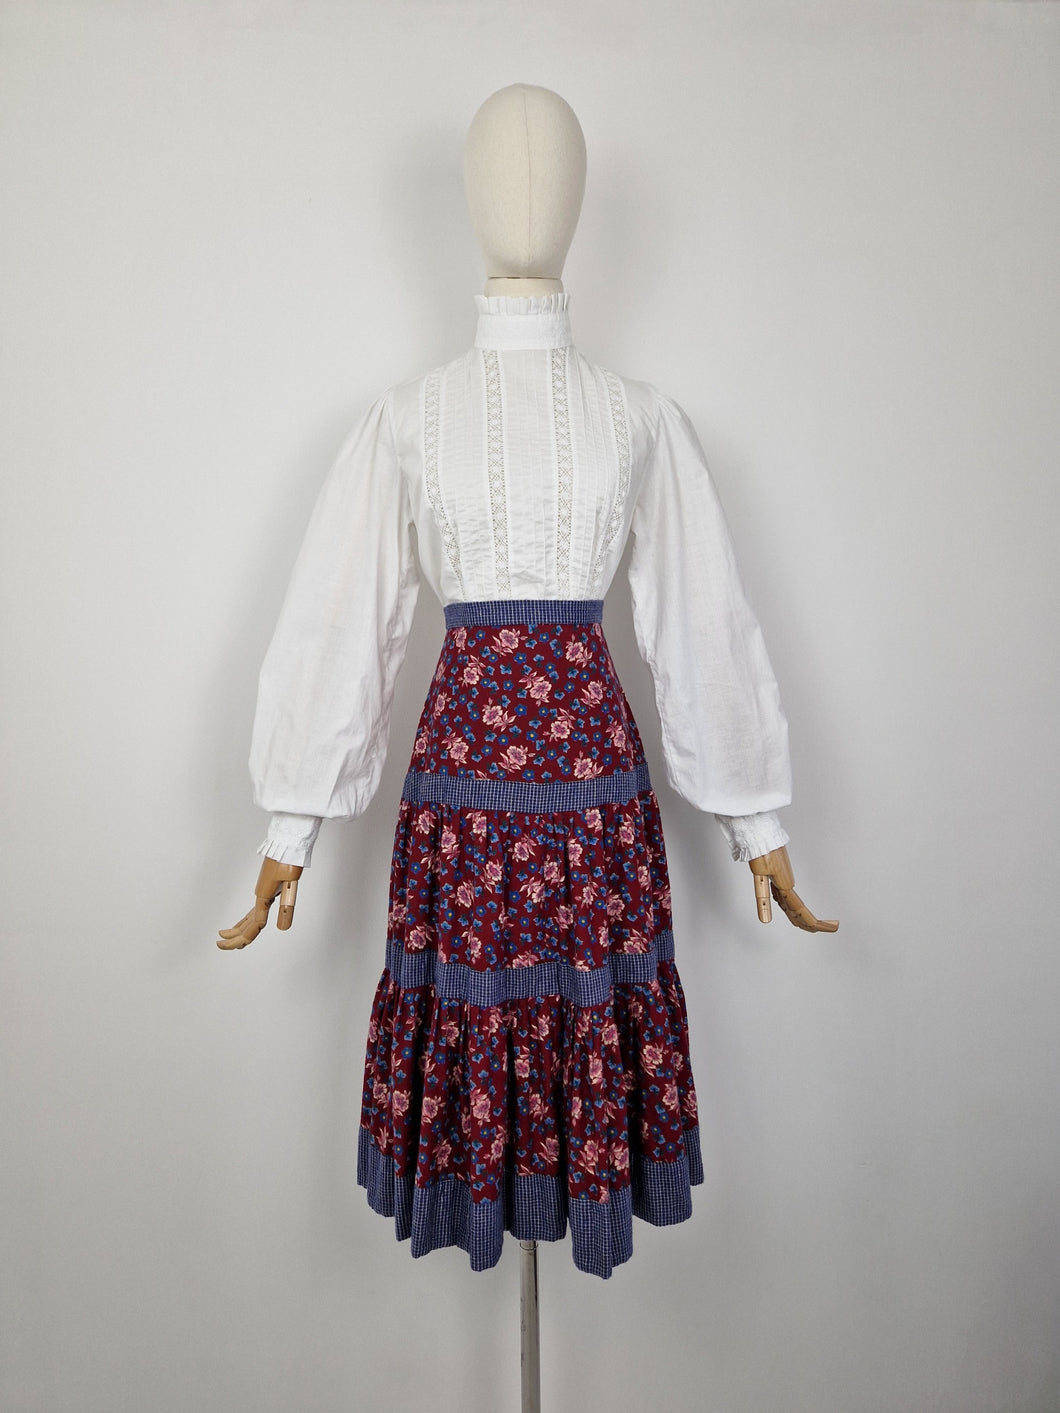 Vintage 80s prairie tiered skirt